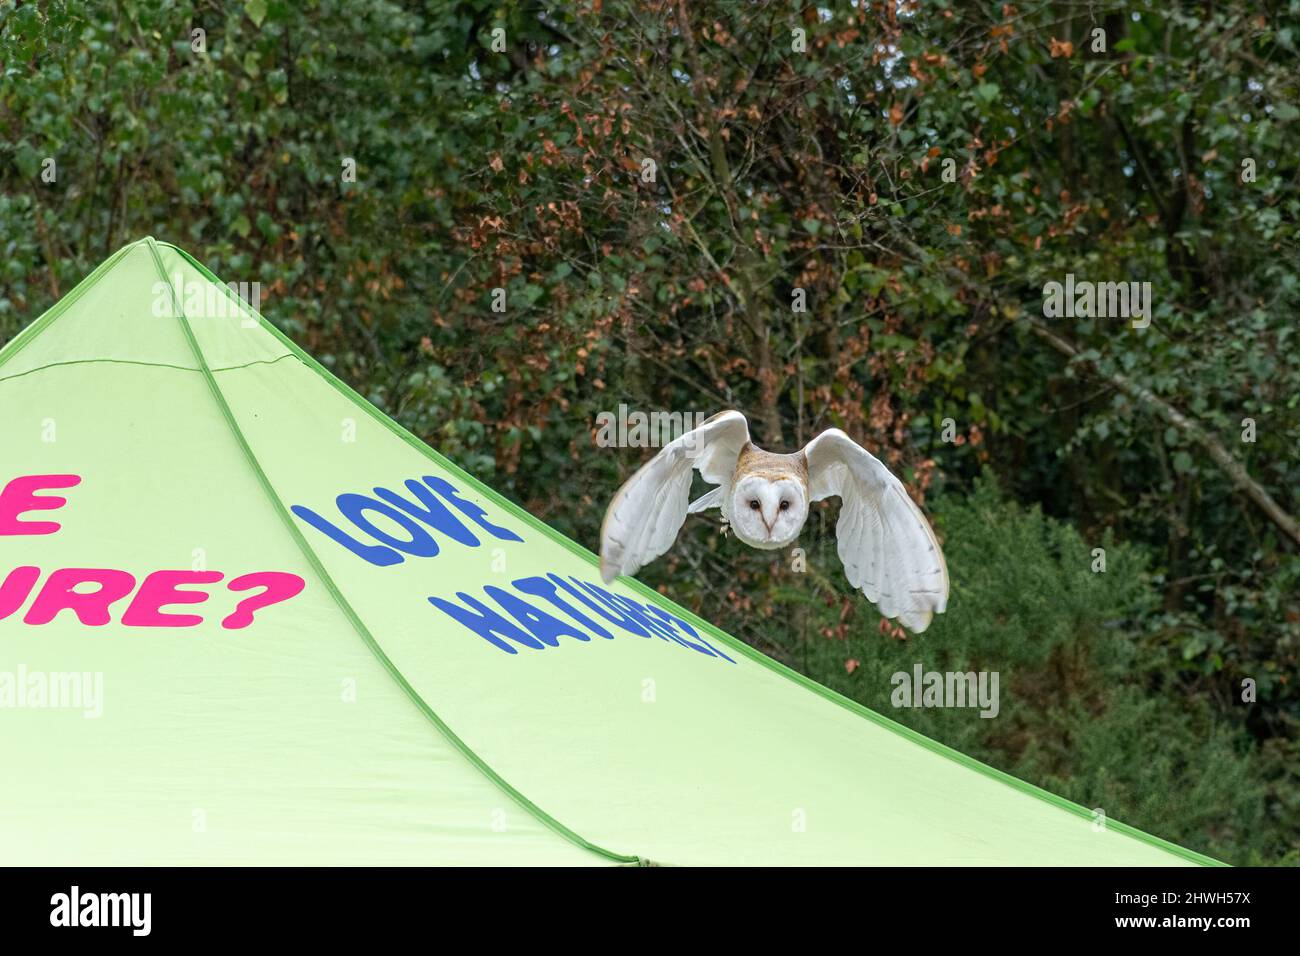 Eine Scheune Eule fliegt mit Love Nature auf einem Zelt, auf einer Country Show in Großbritannien. Demonstration der Greifvögel beim Fliegen. Stockfoto